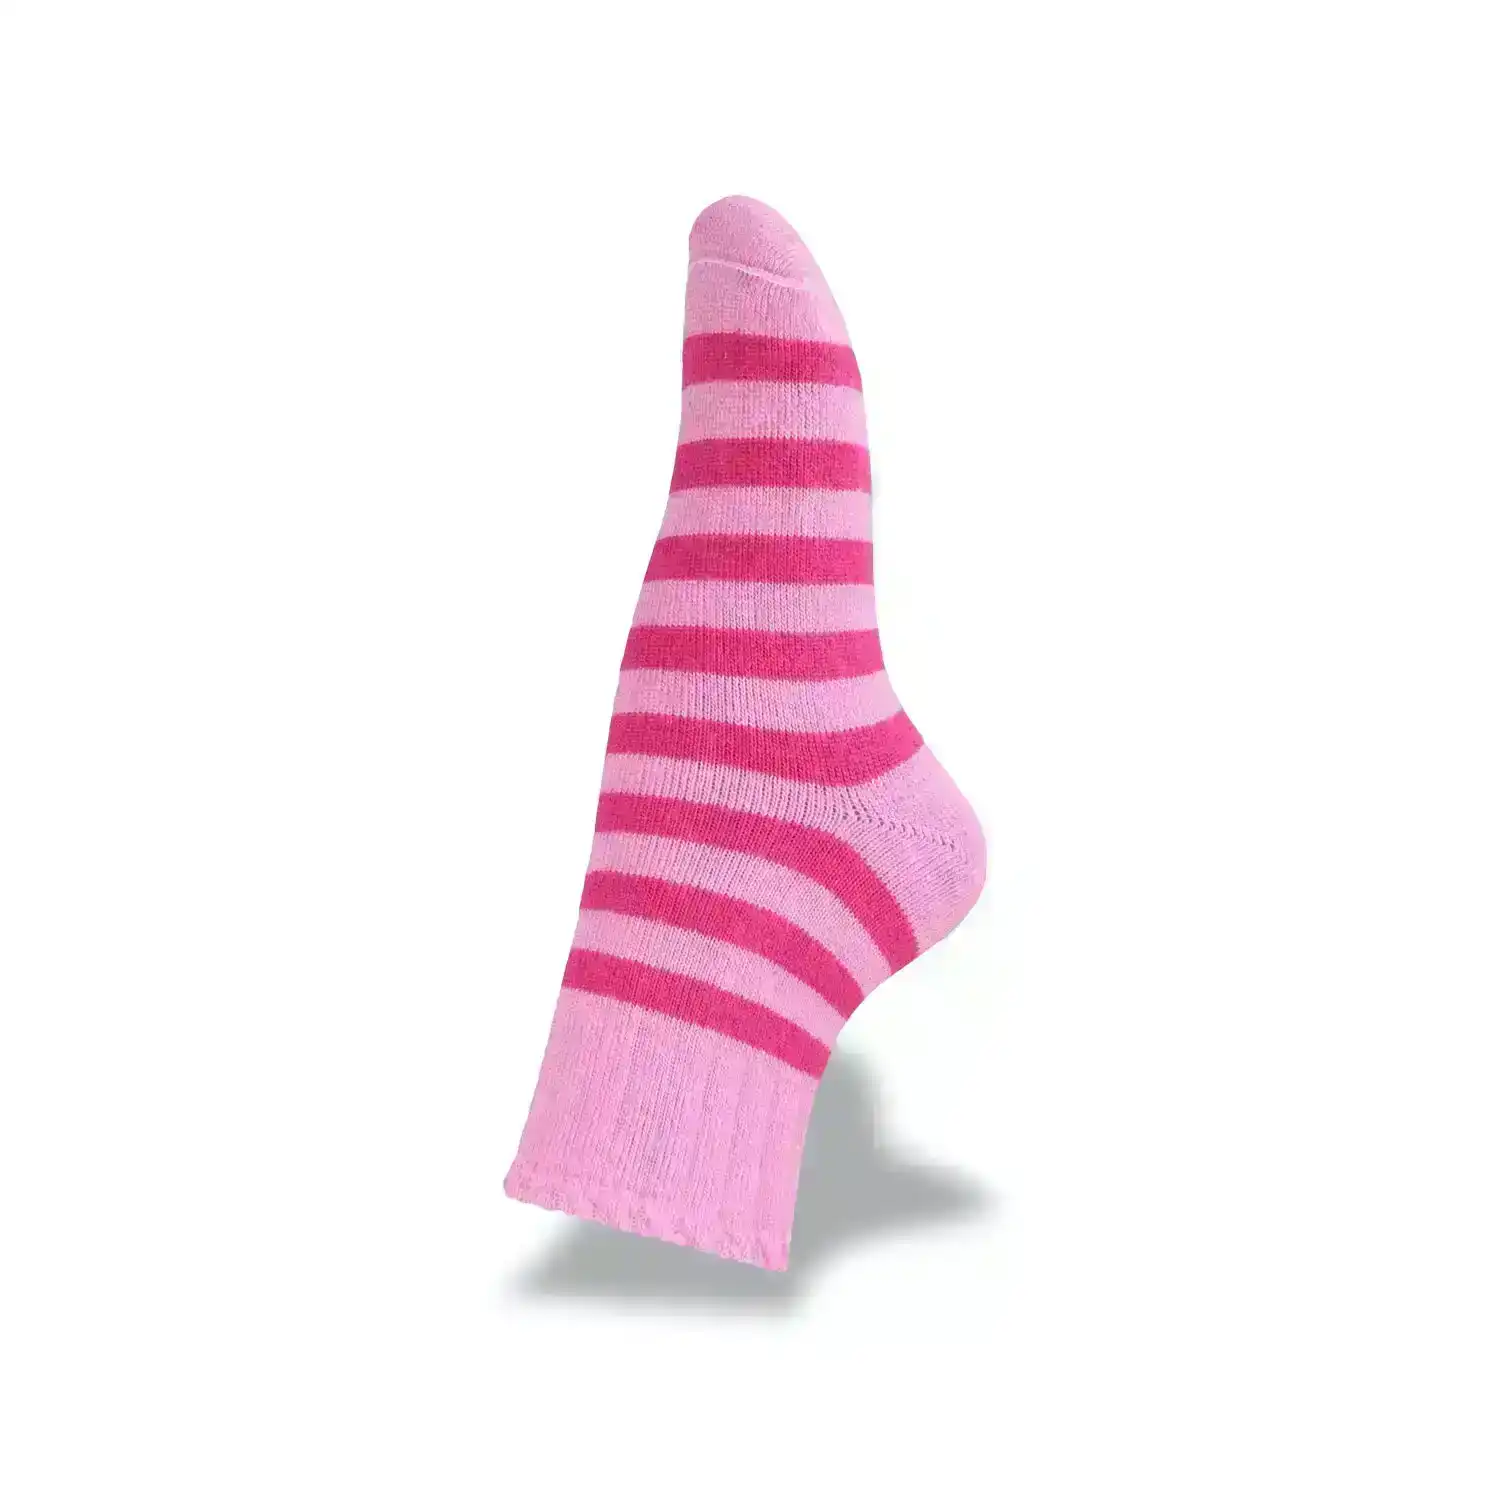 3Peaks Ranger Size 13-3 Assorted Kids/Chidren Stripe Winter/Warm Wool Socks Pink